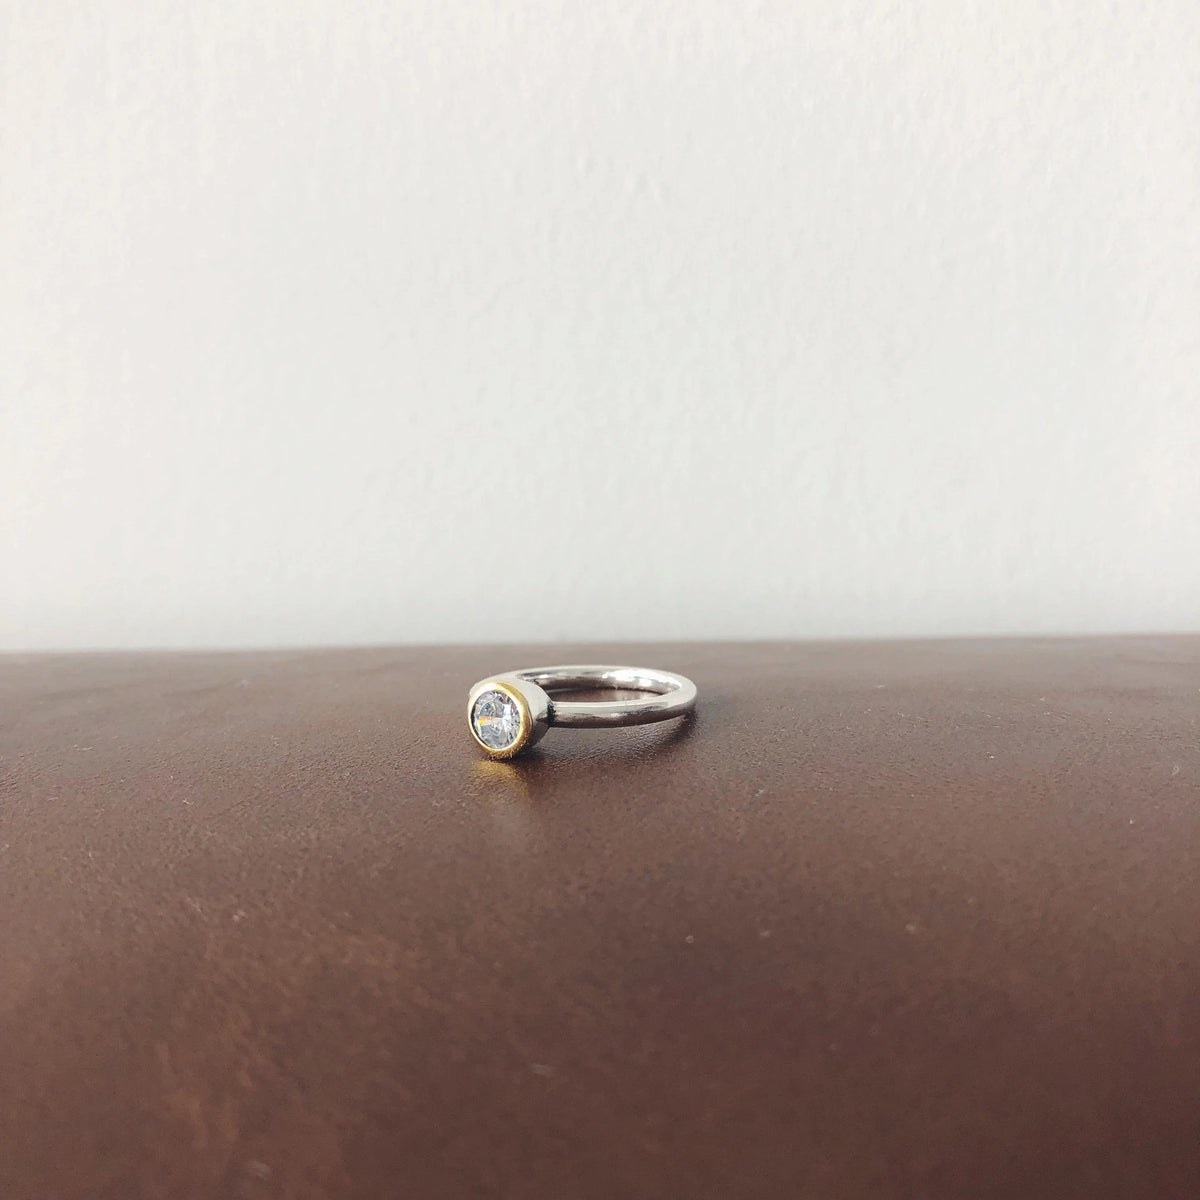 Unique Handmade Ring with Brilliant Cubic Zirconia Gemstones